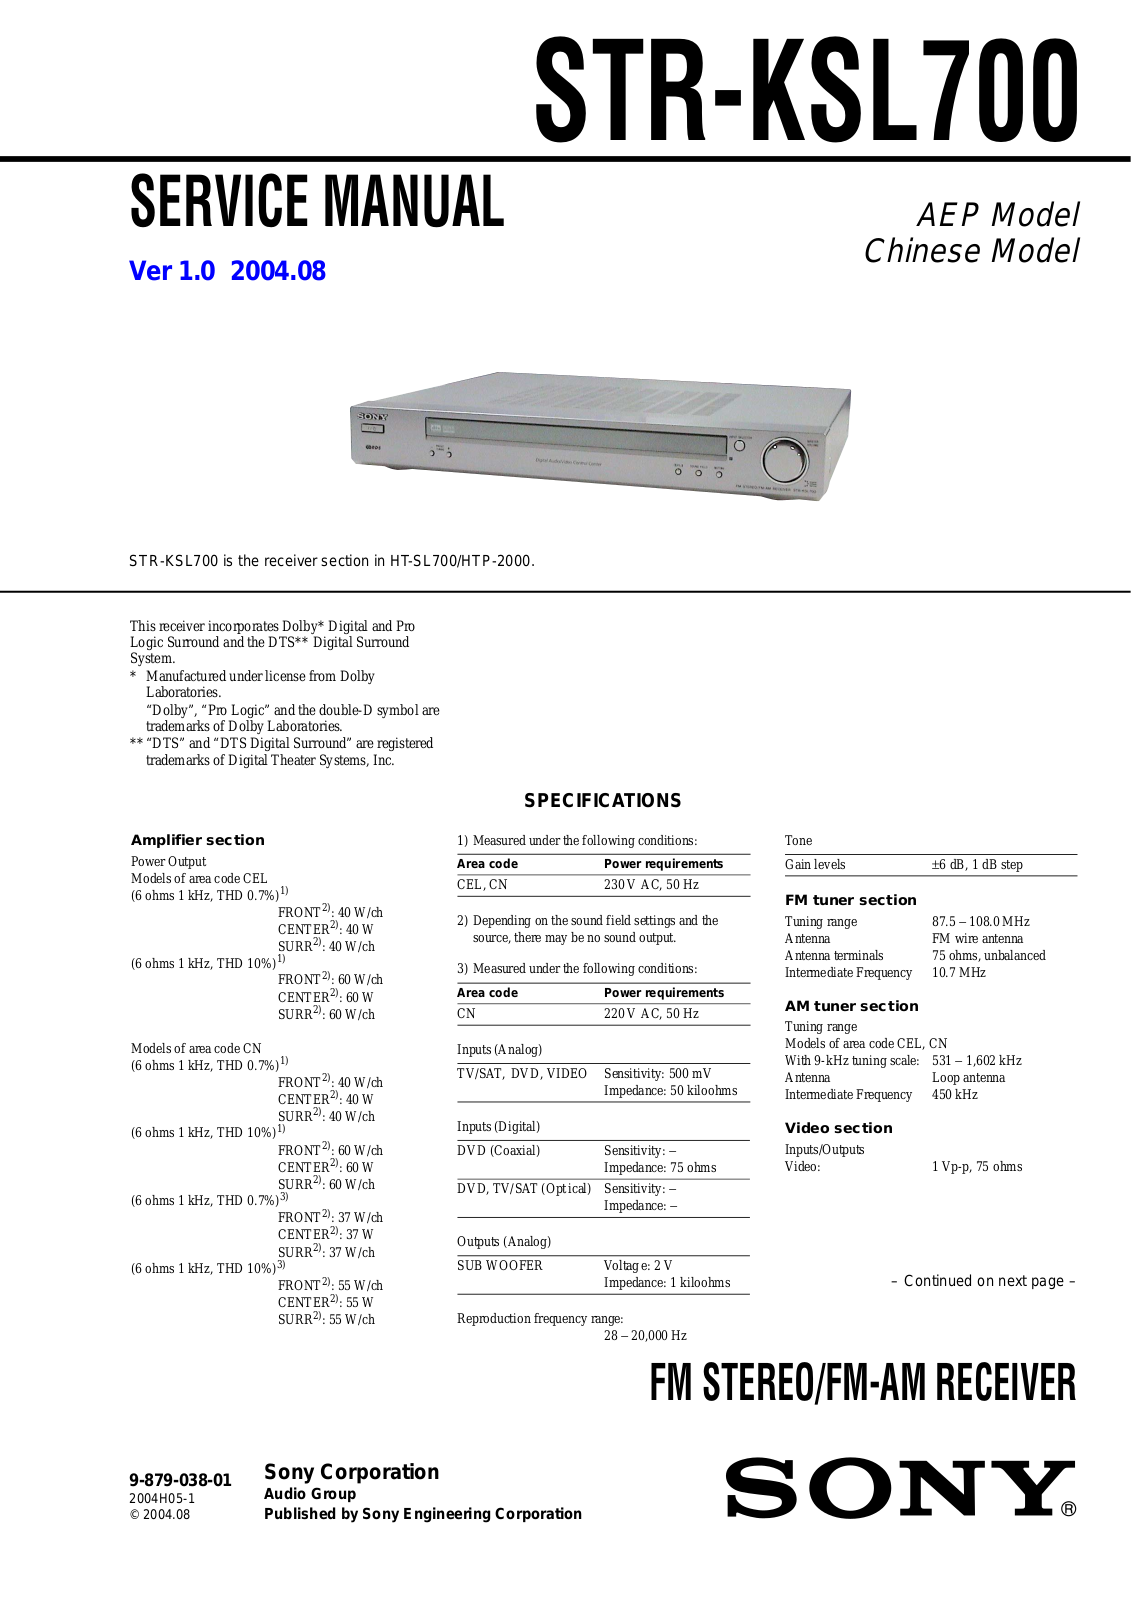 Sony STR-KSL700 Service Manual